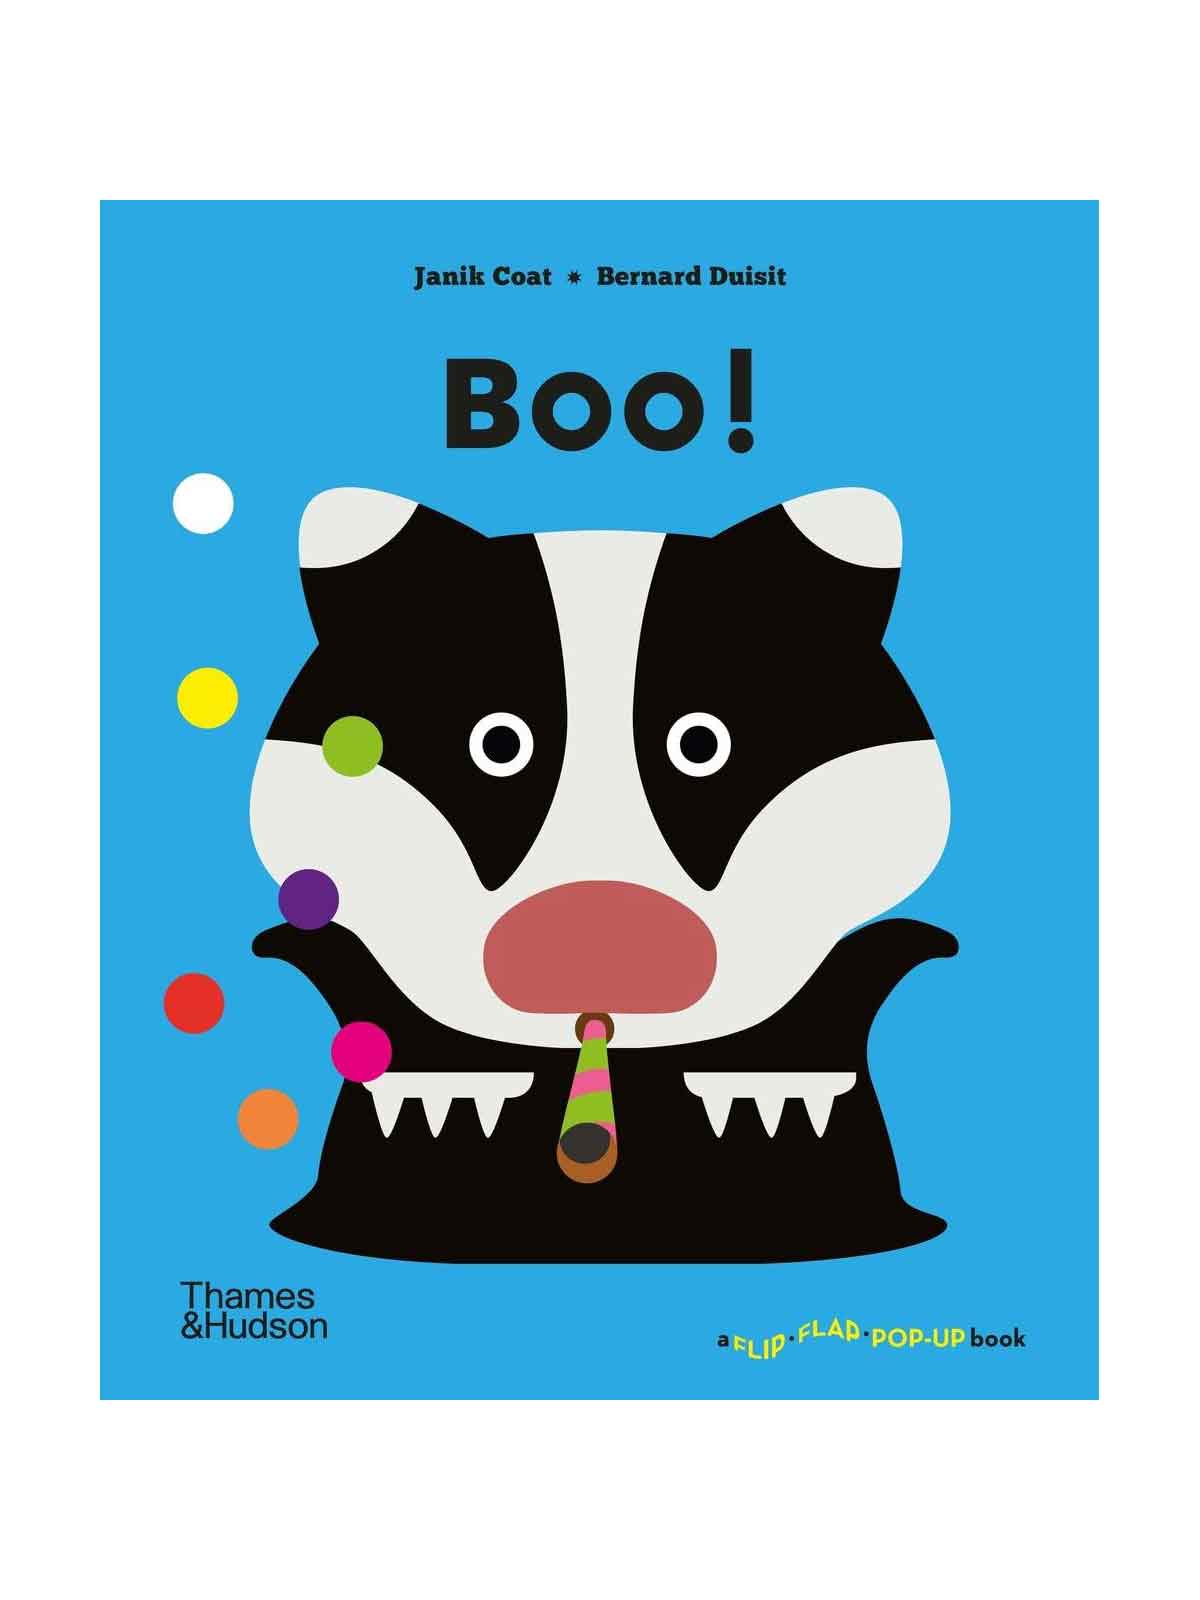 Boo! Pop-Up Book